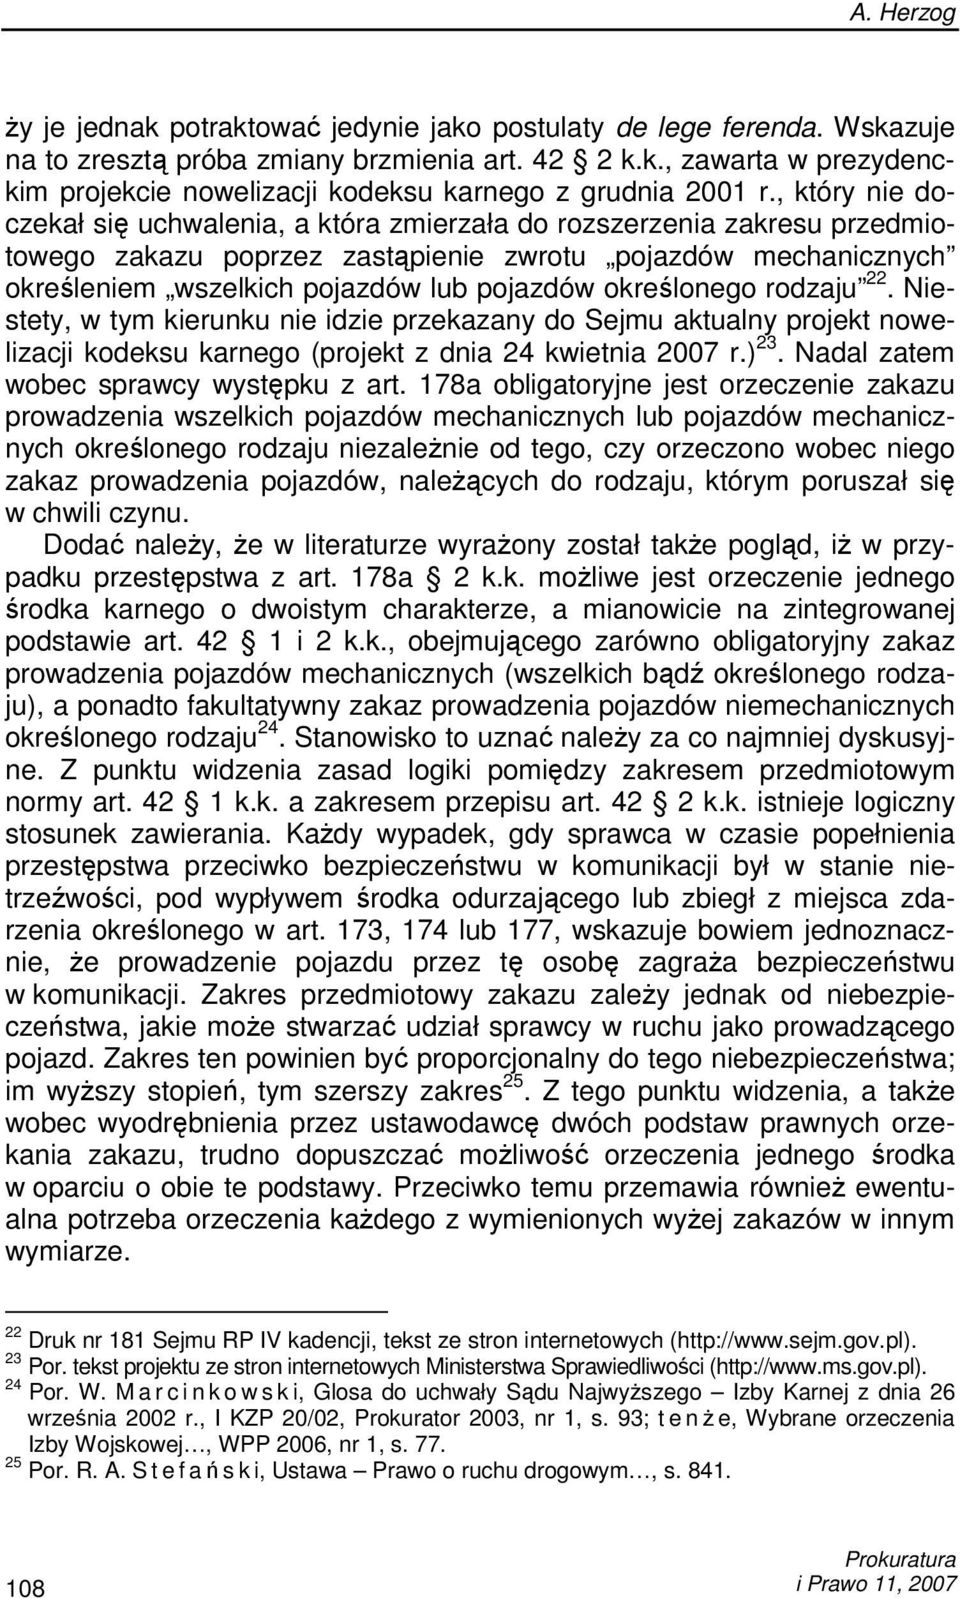 określonego rodzaju 22. Niestety, w tym kierunku nie idzie przekazany do Sejmu aktualny projekt nowelizacji kodeksu karnego (projekt z dnia 24 kwietnia 2007 r.) 23.